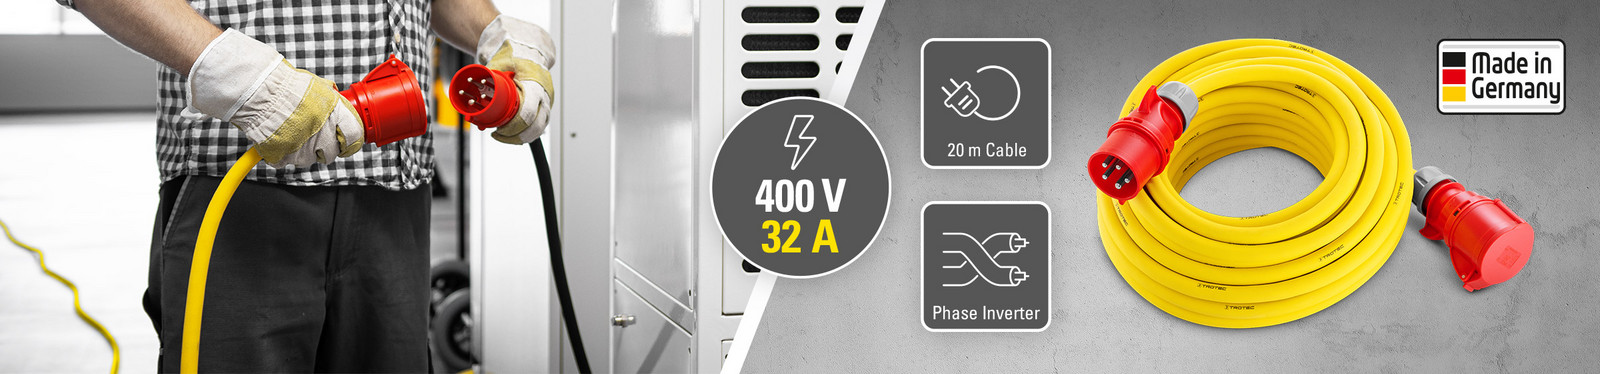 Förlängningskabel för proffs 400 V (32 A) – Made in Germany